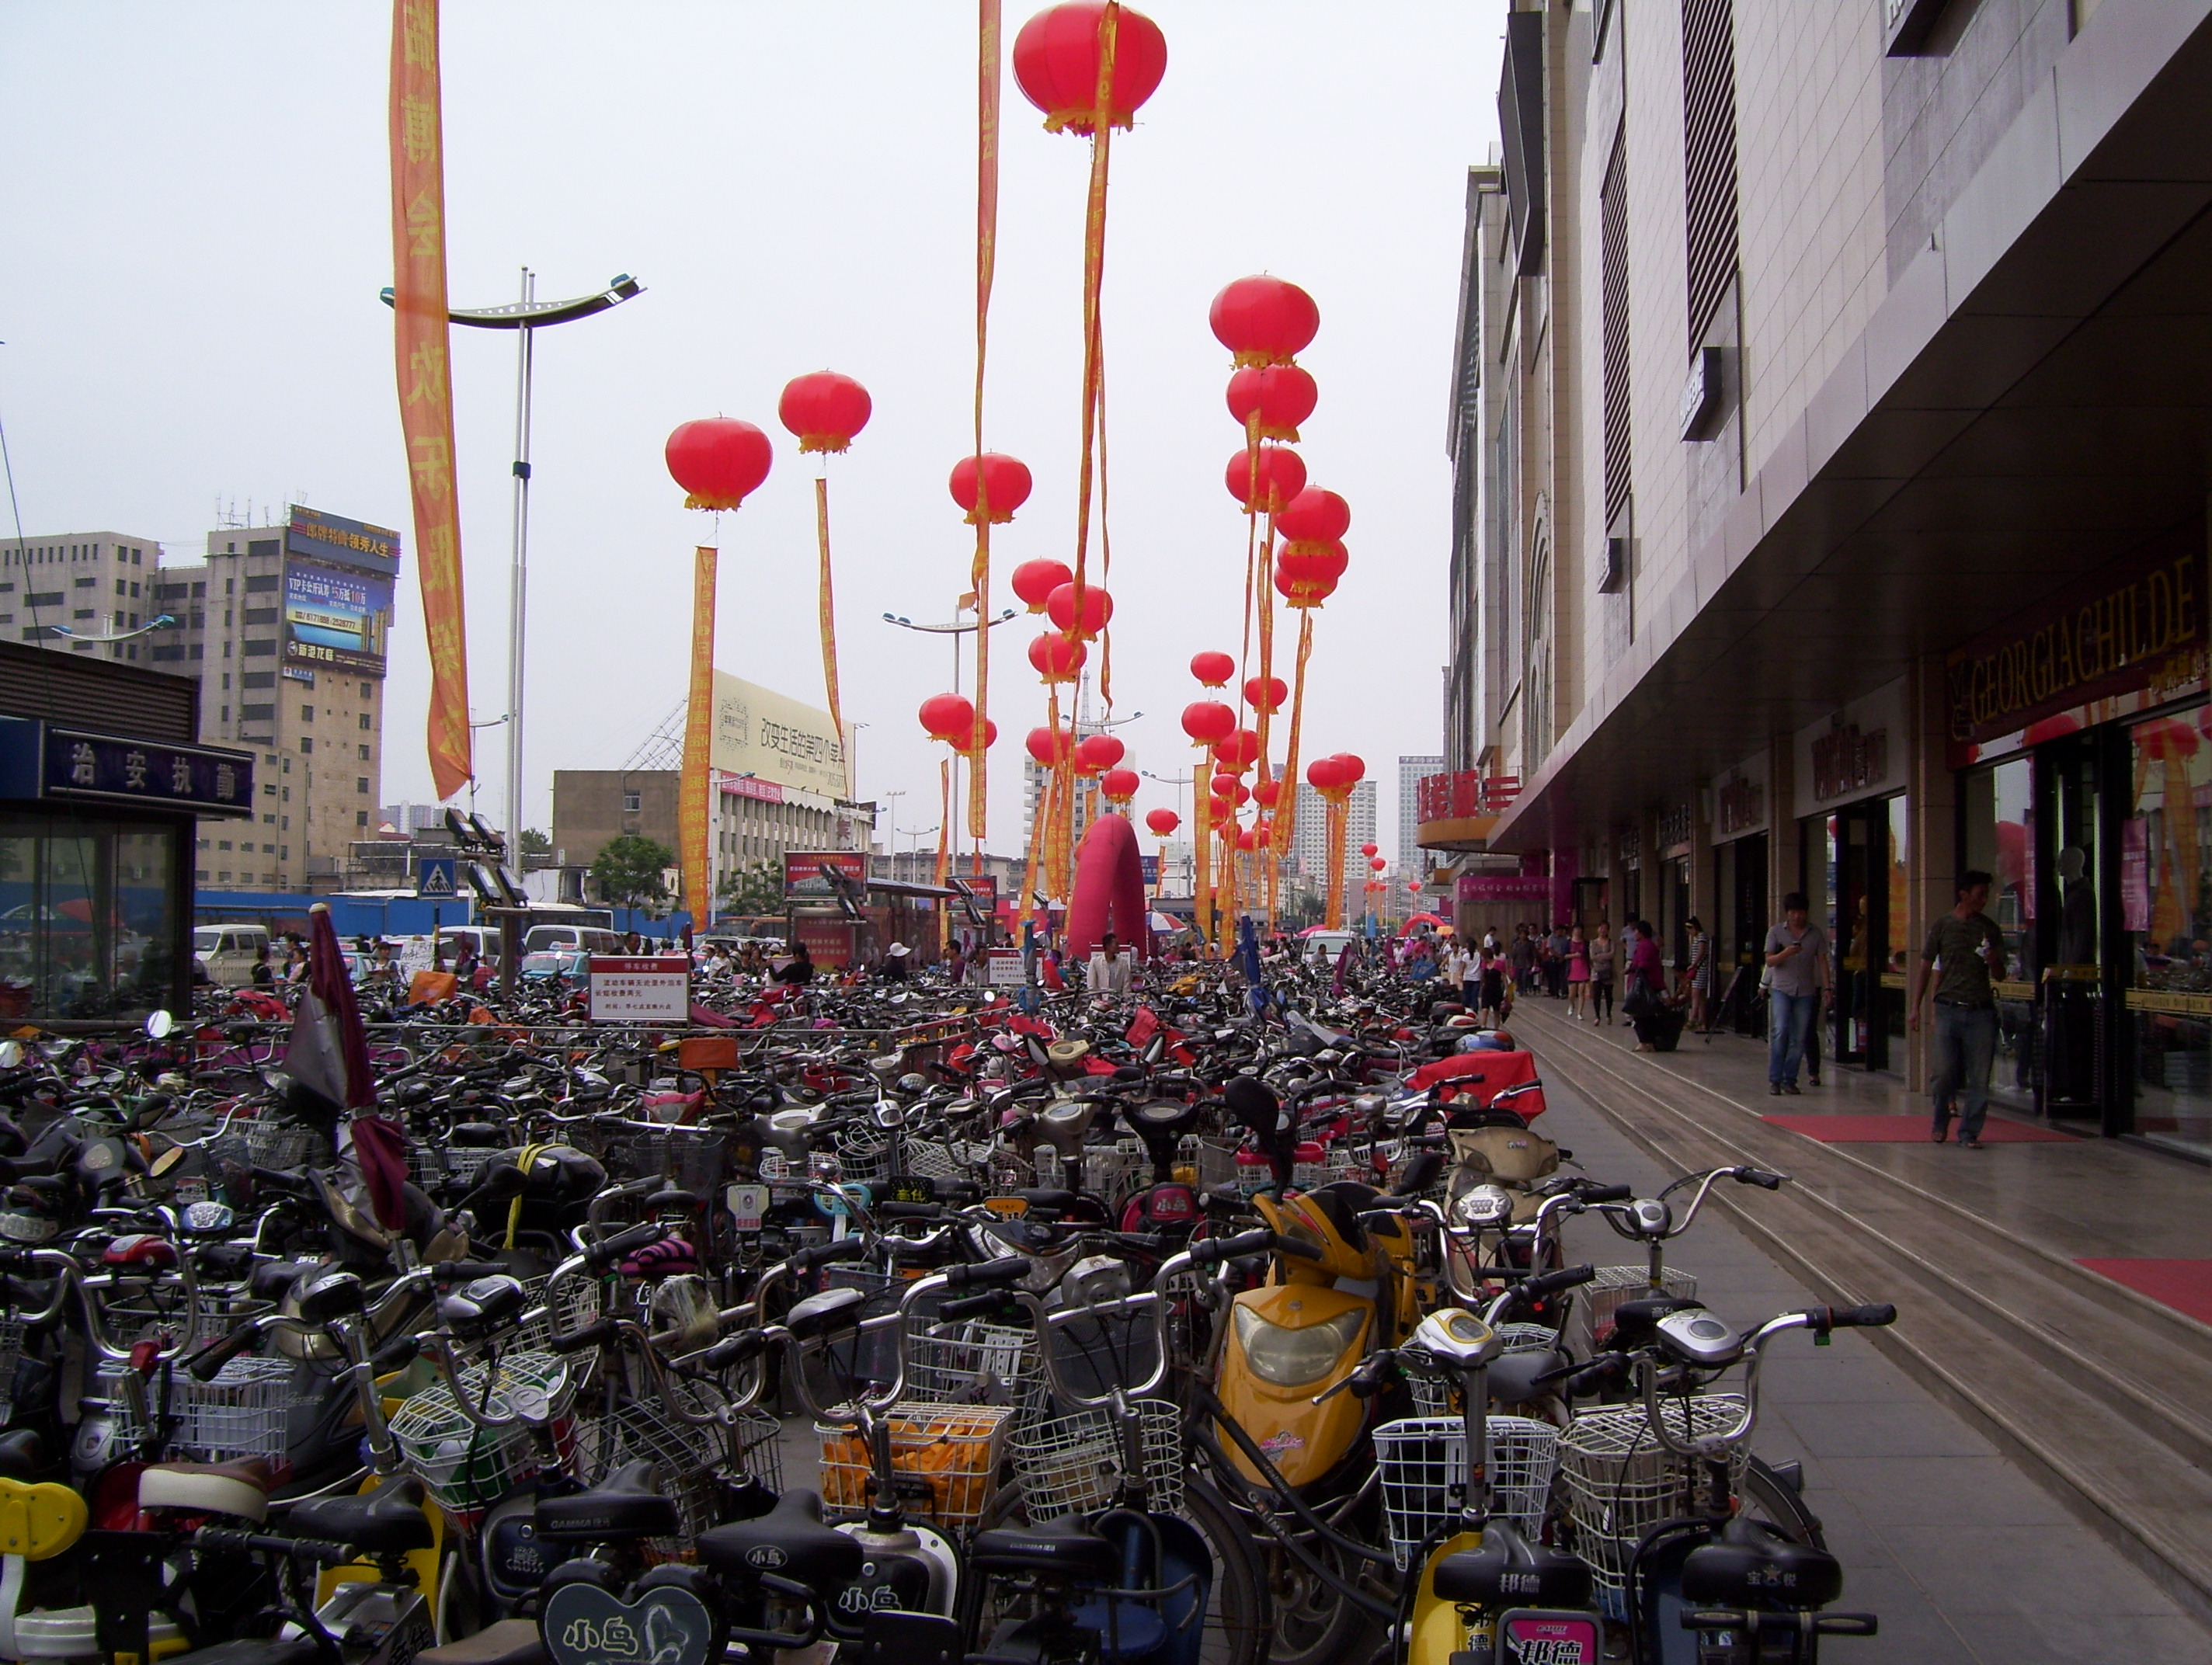 On dit qu'il y a beaucoup de vélos en Chine...c'est pas vrai :)))